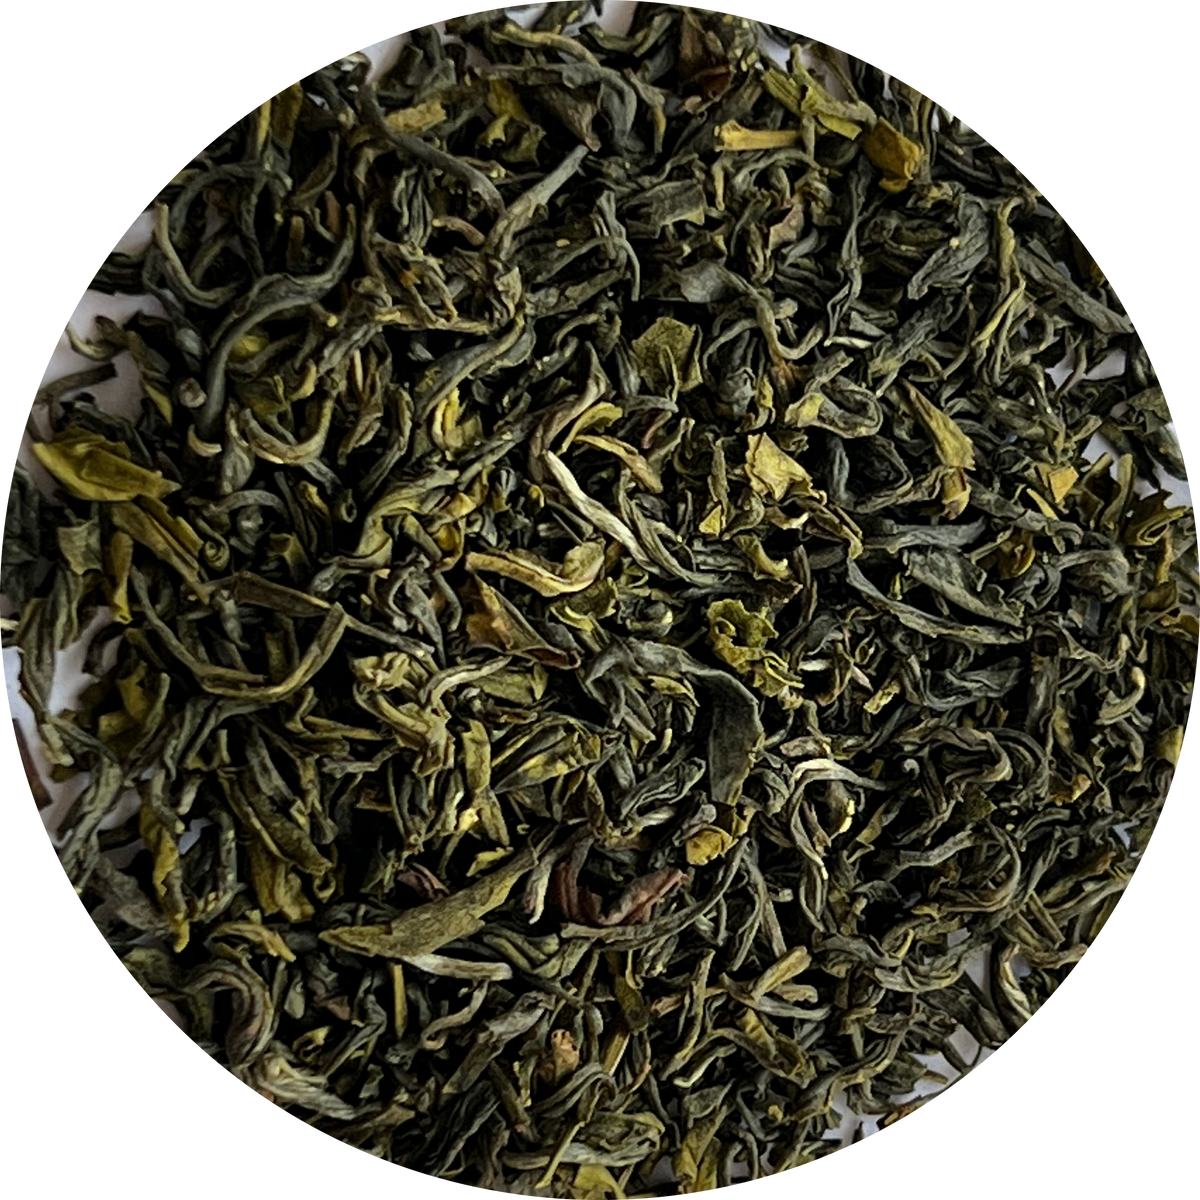 Full sample pack (Leaf tea)